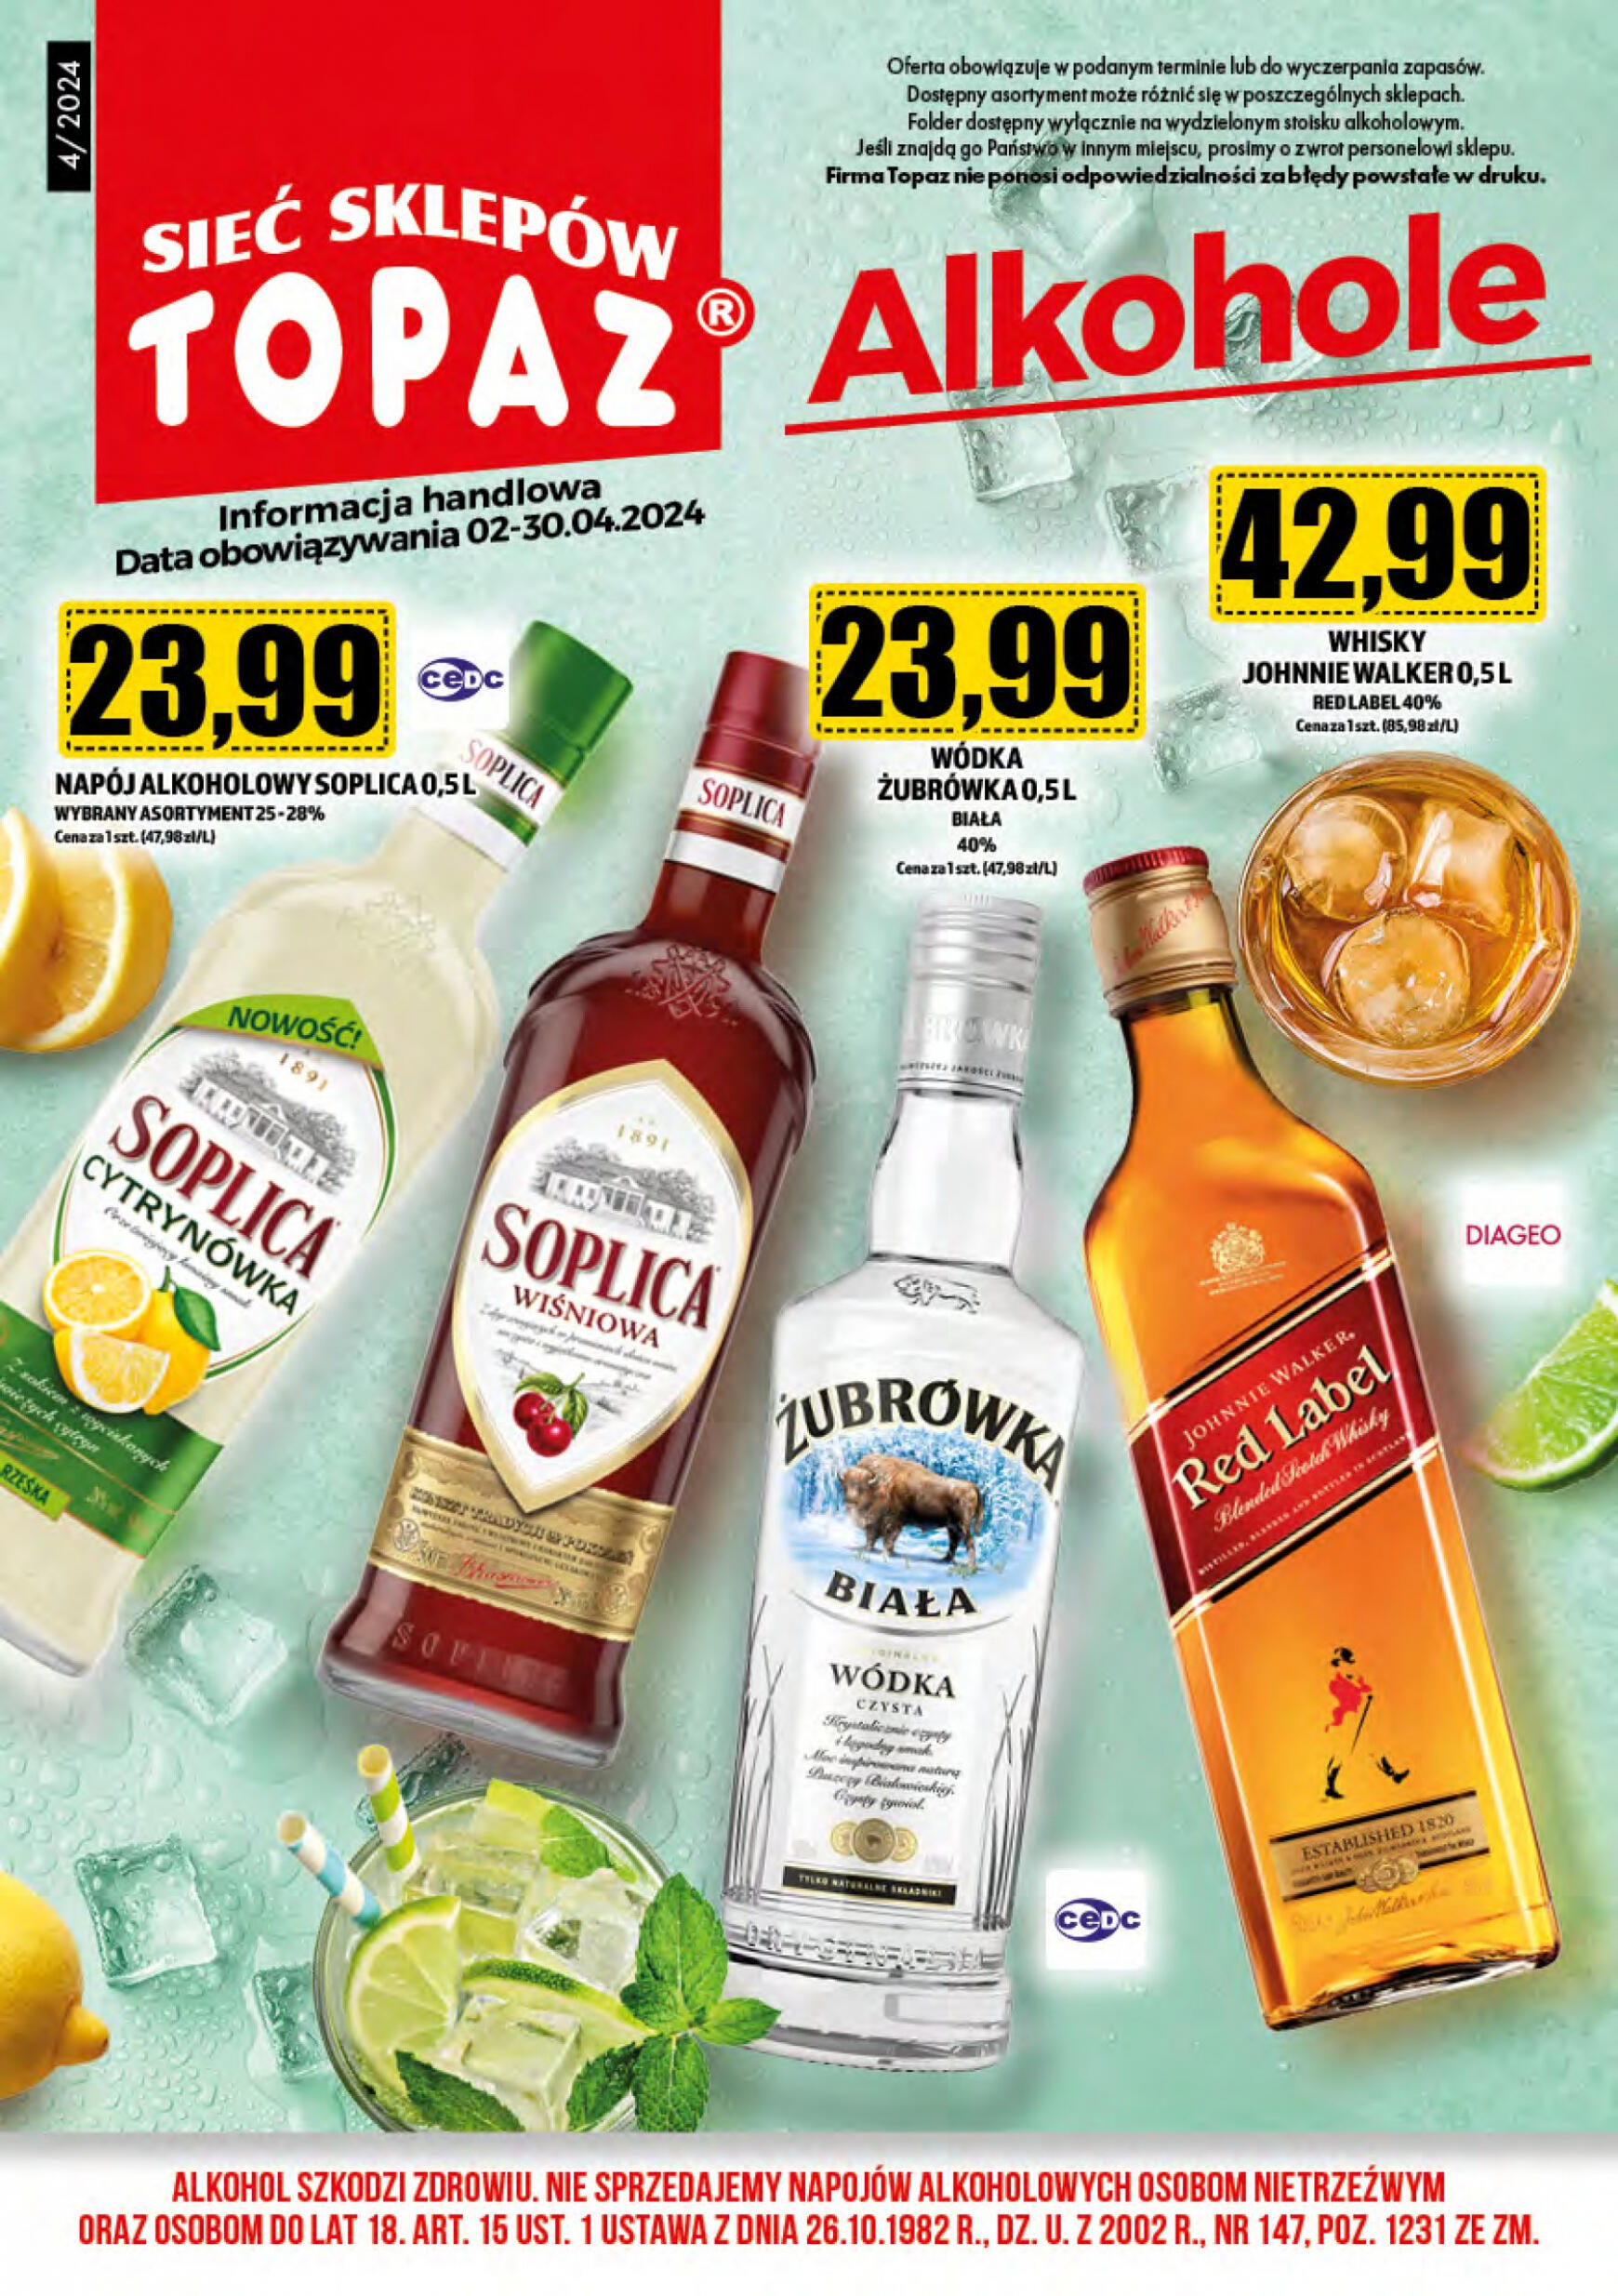 topaz24 - Topaz24 - Alkohole obowiązuje od 01.04.2024 - page: 1